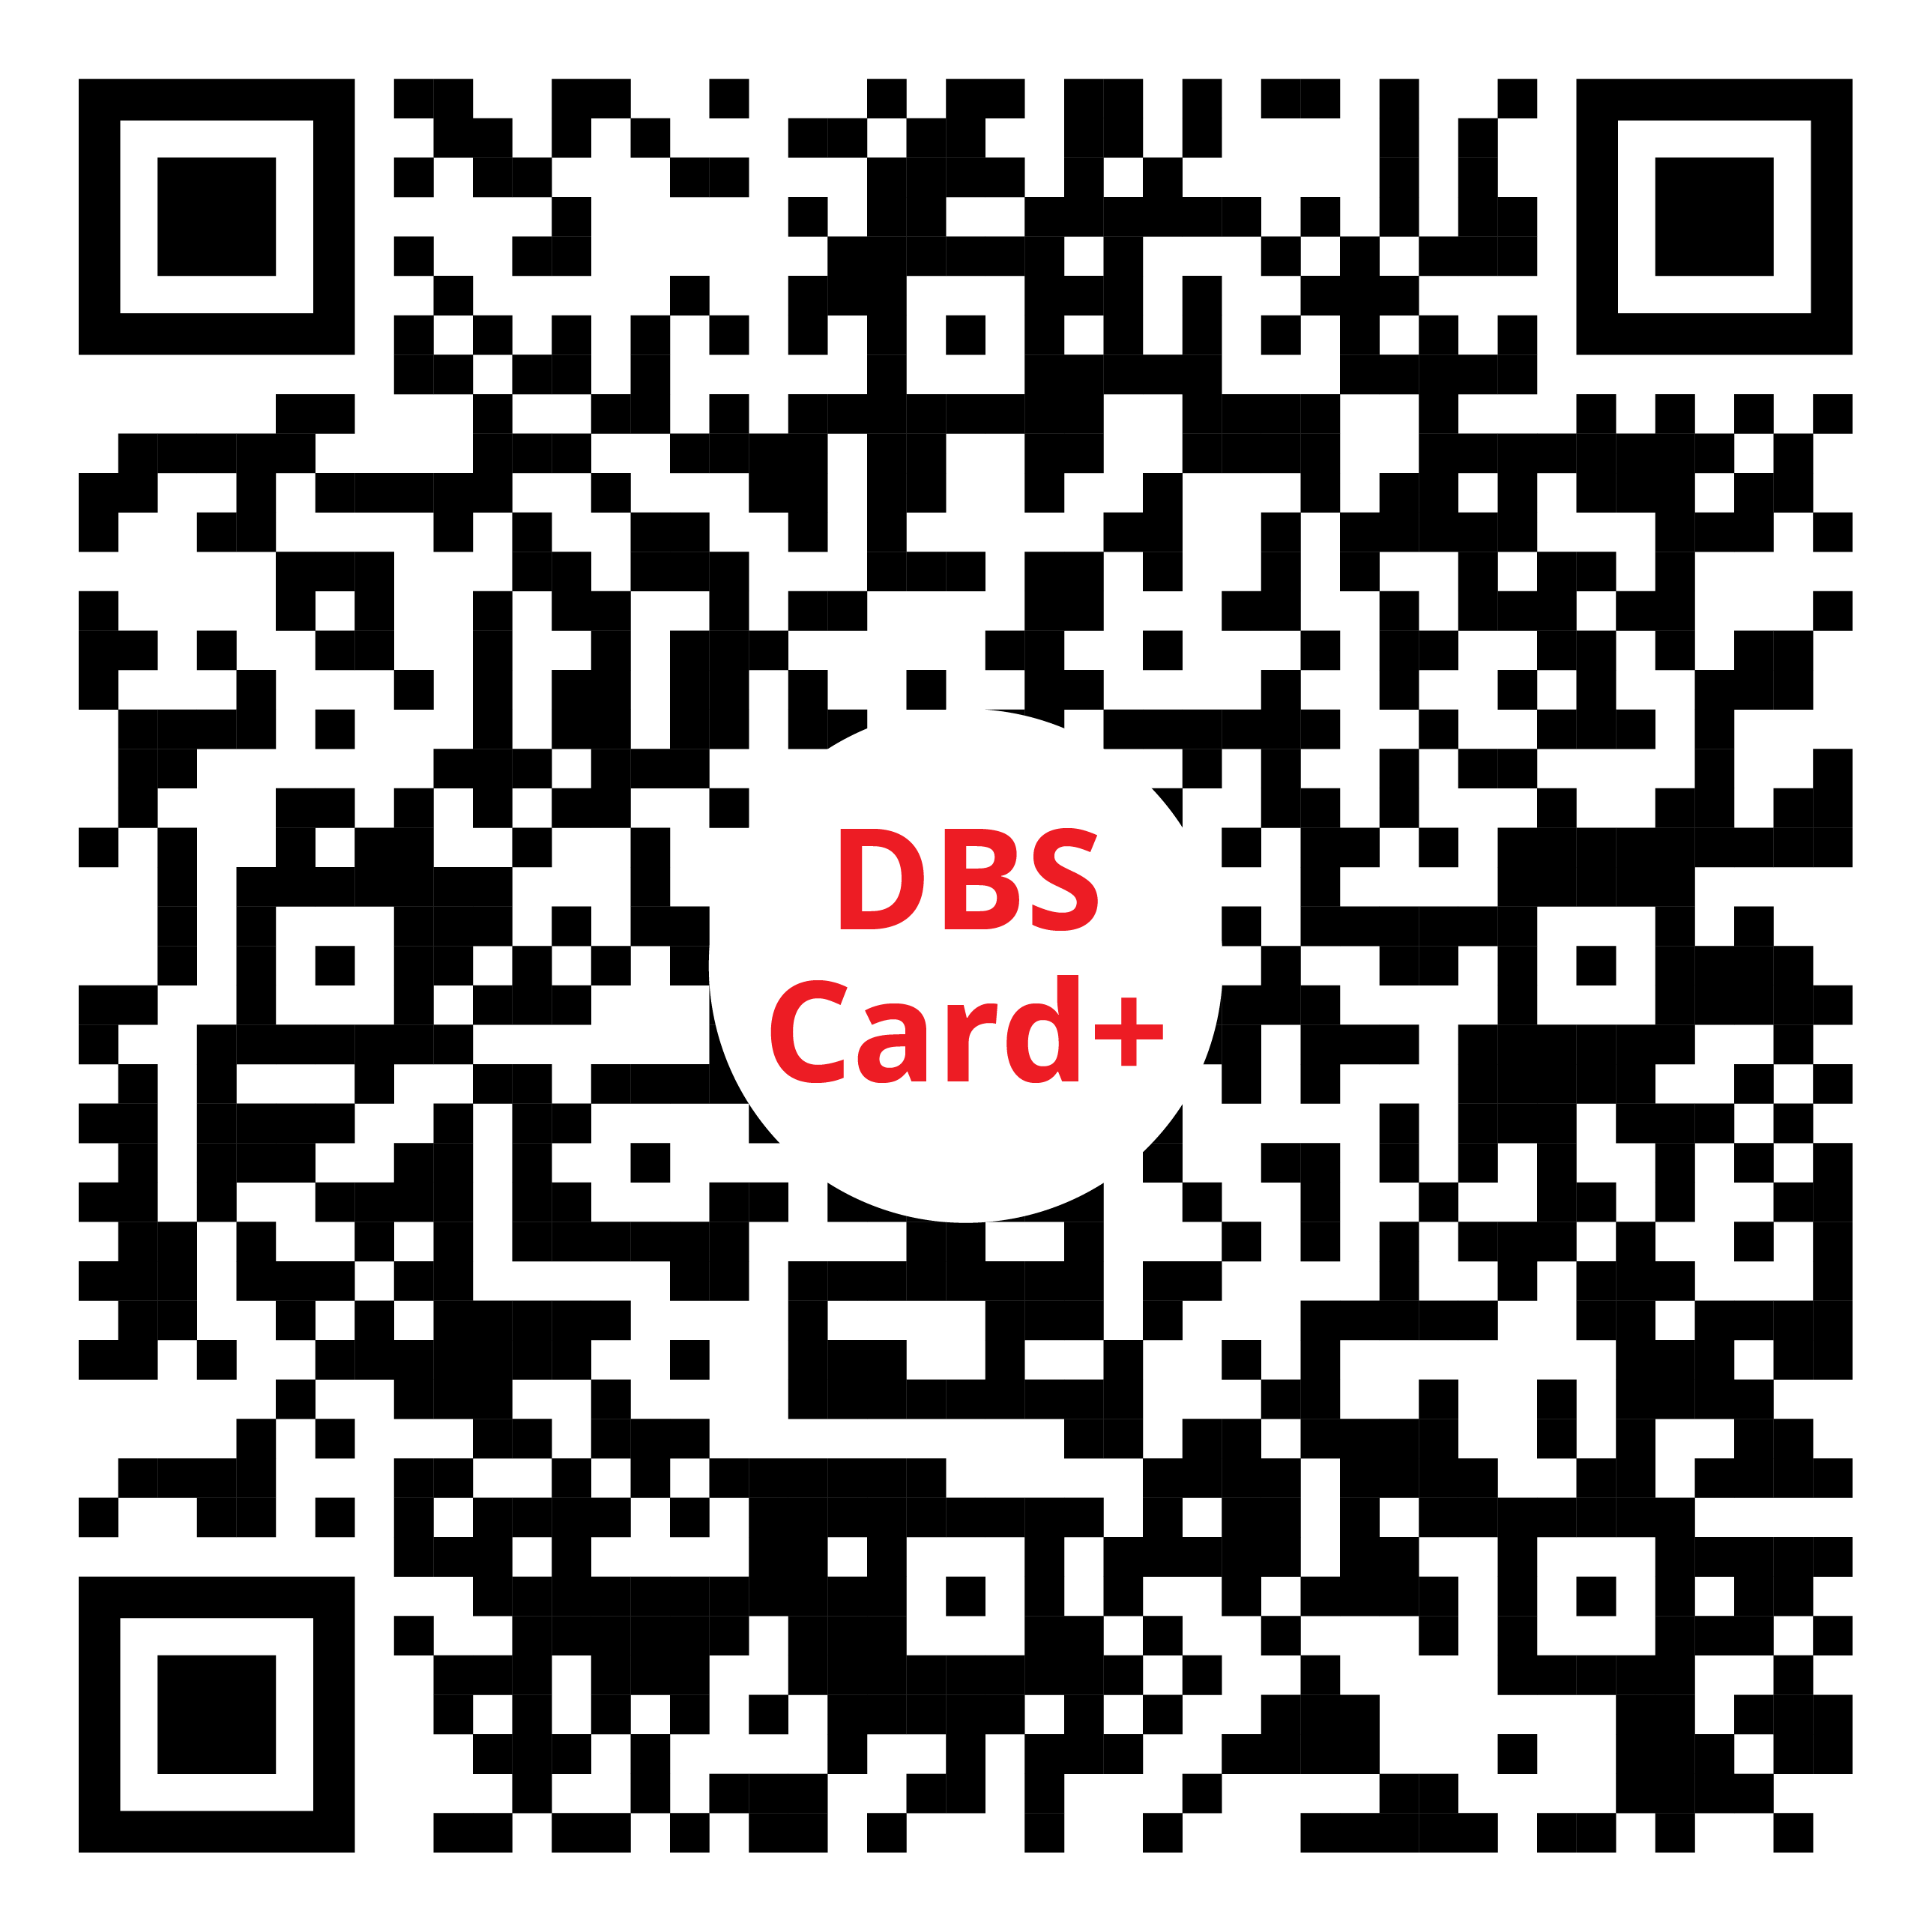 DBS Card+